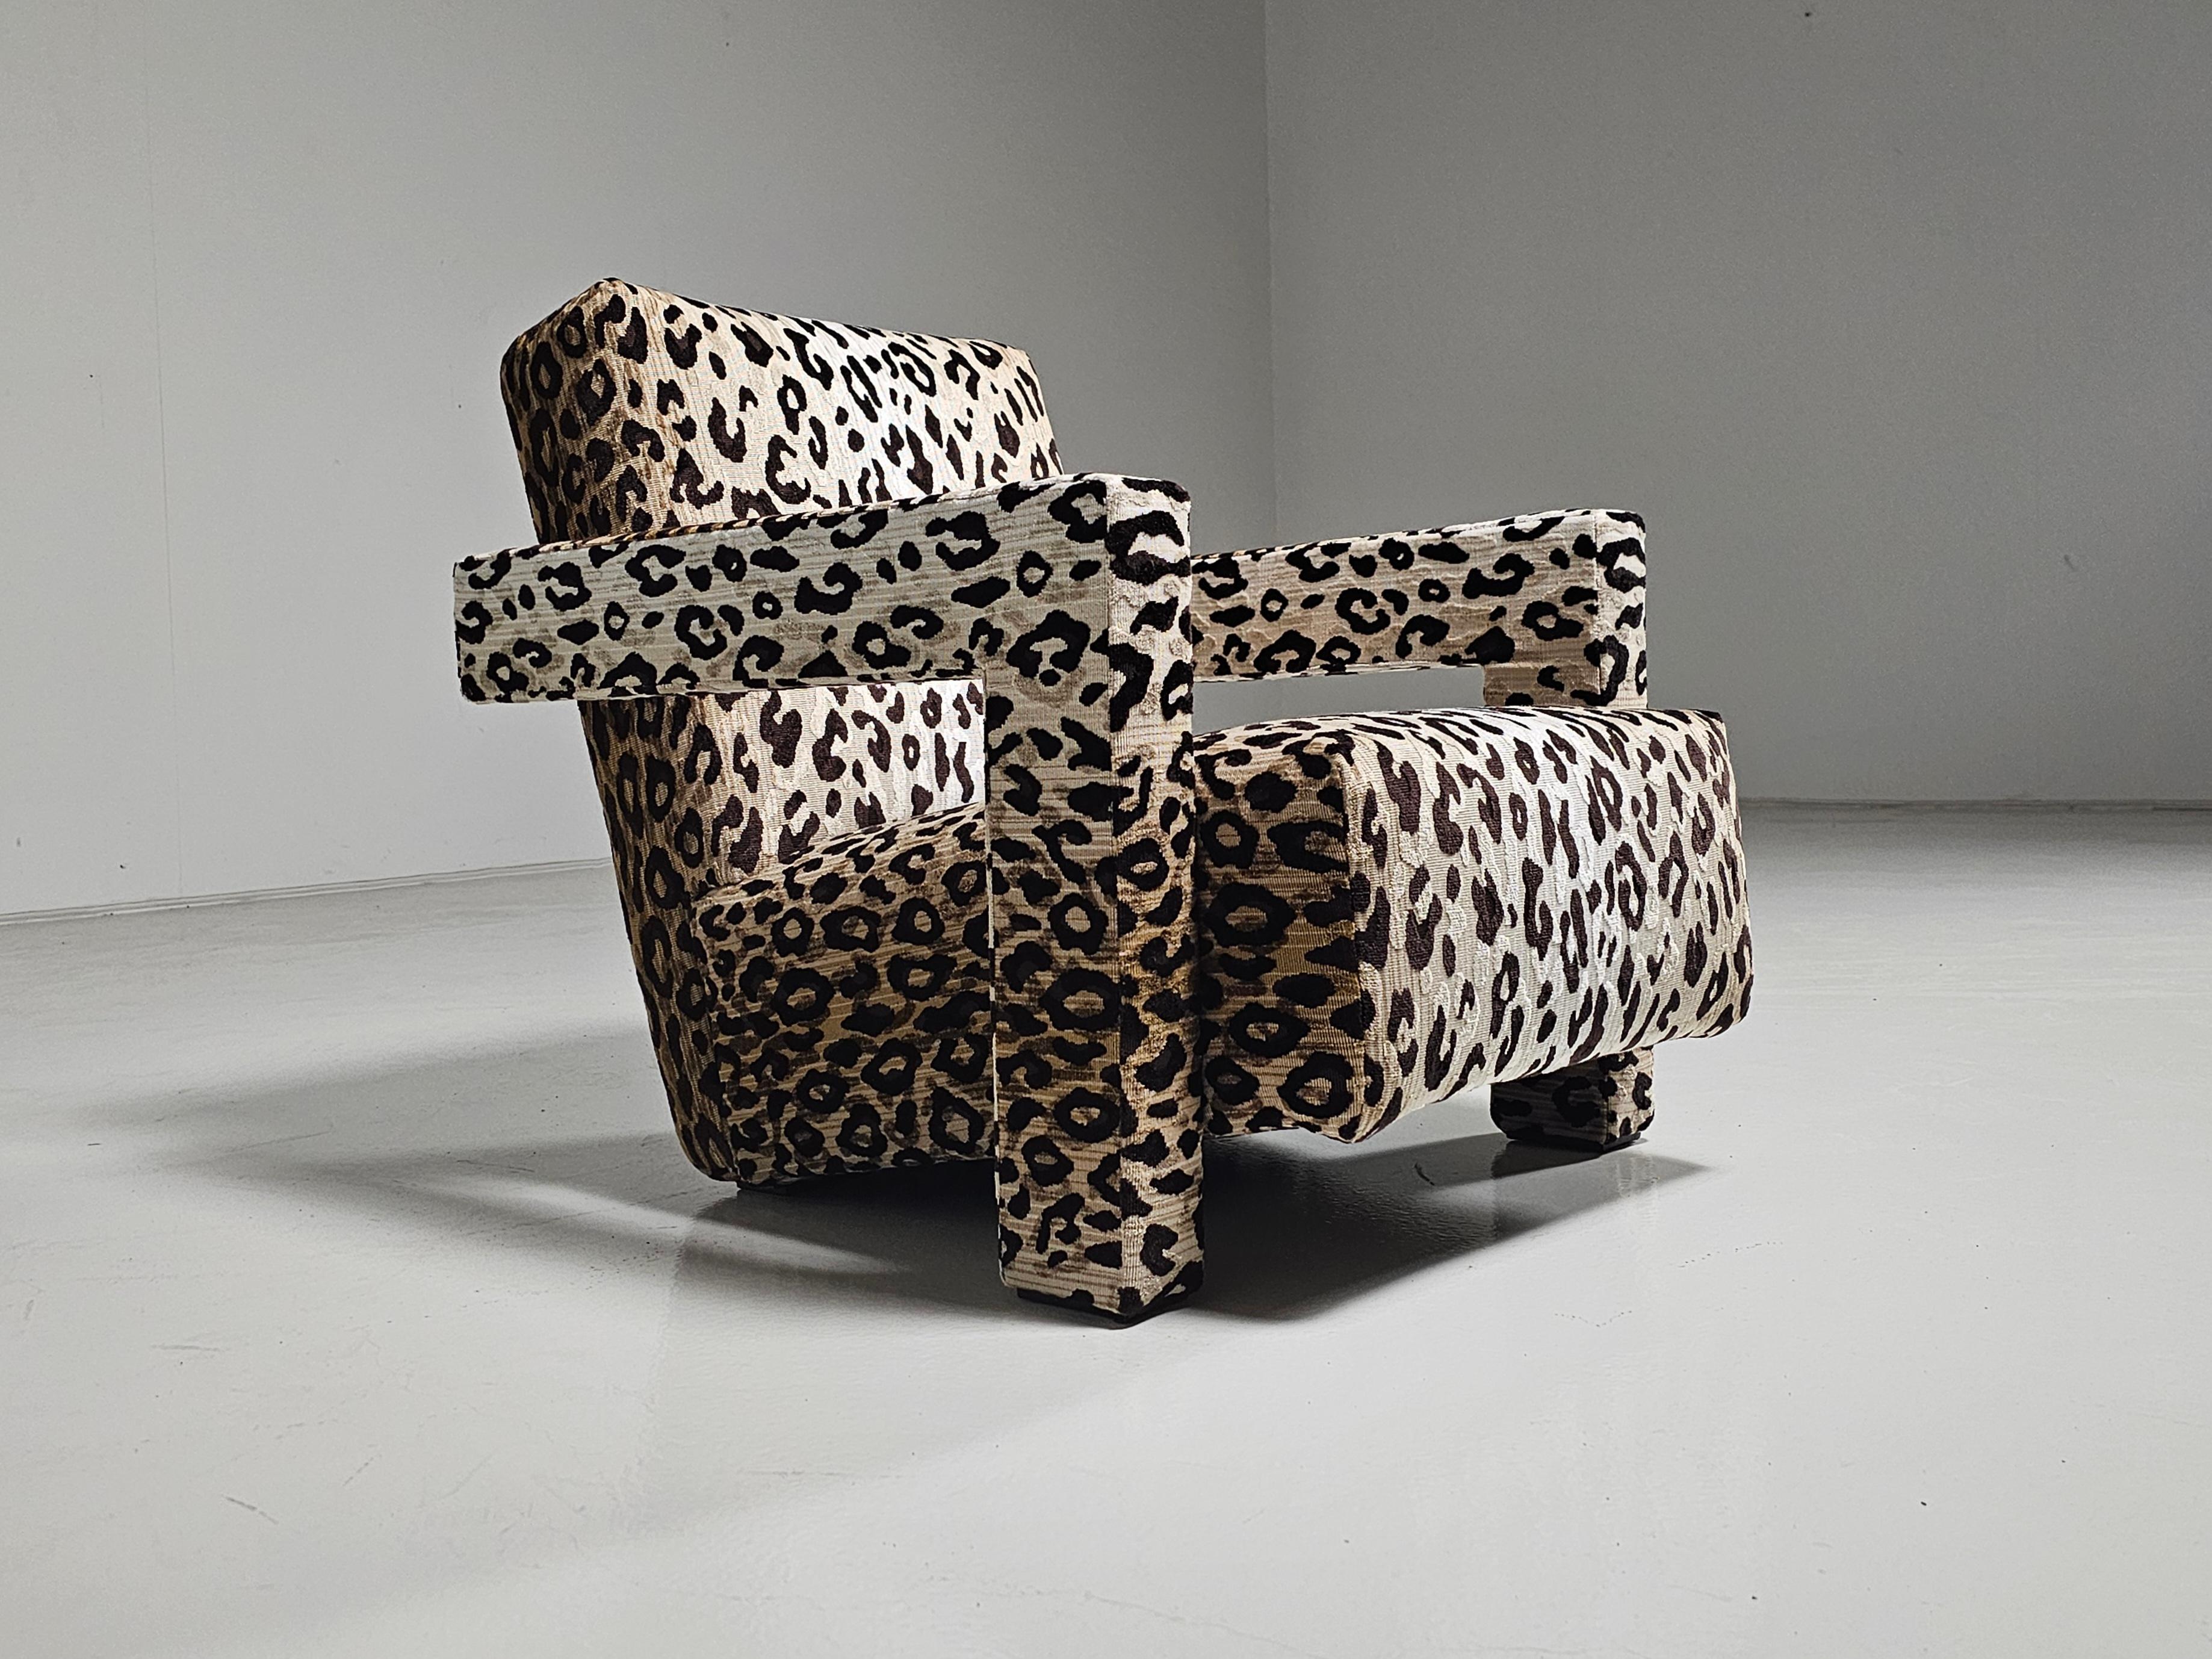 Loungesessel, entworfen von Gerrit Thomas Rietveld im Jahr 1935.  Hergestellt von Cassina in Italien, 1980er Jahre.

Gerrit T. Rietveld entwickelte den Entwurf für den Utrecht-Sessel 1935, als er für das Kaufhaus Metz & Co. in Amsterdam arbeitete,